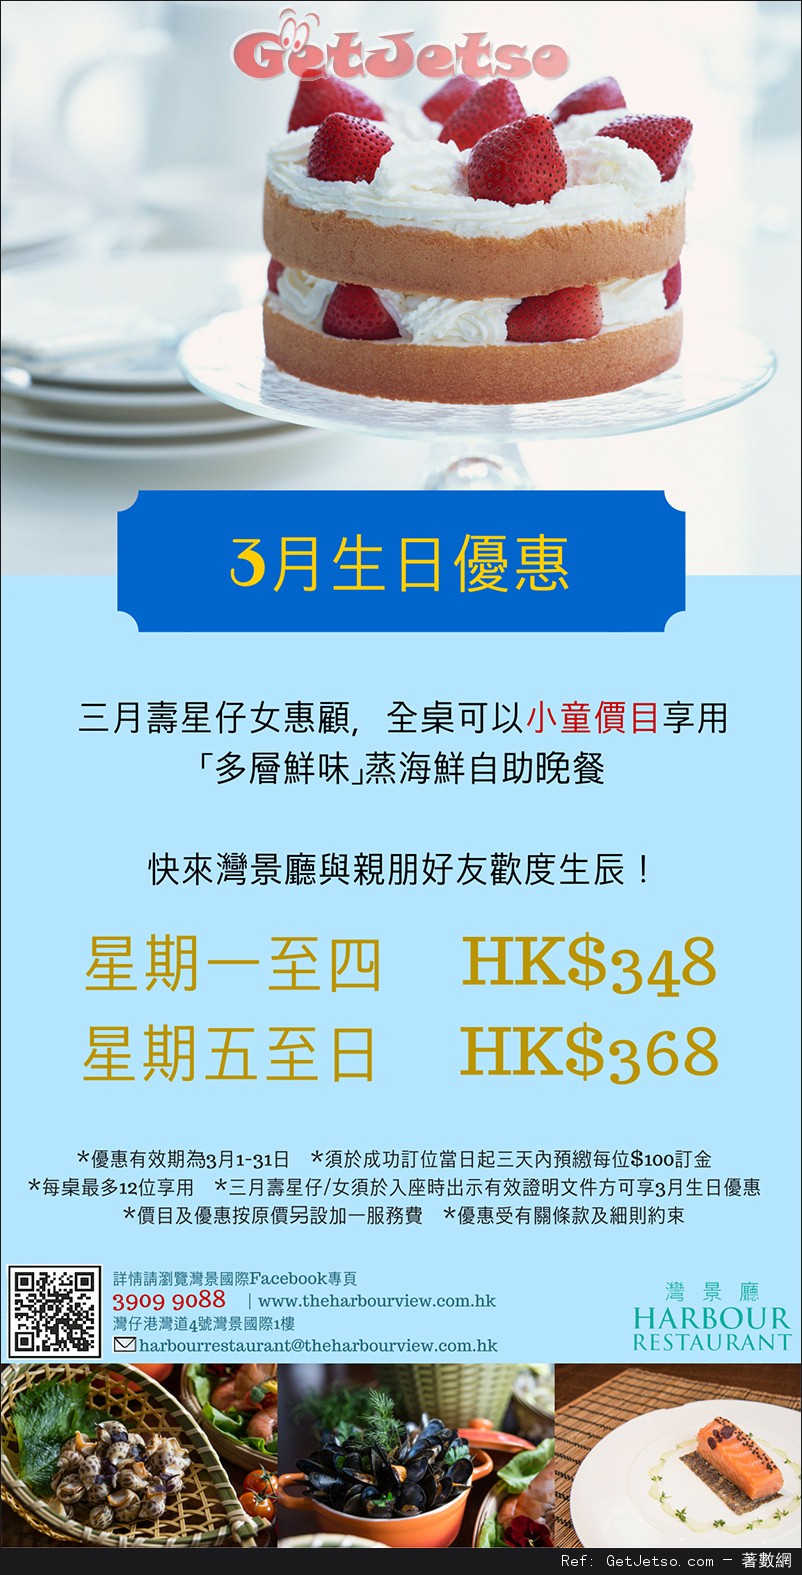 灣景國際3月份生日可全桌使用小童價目享蒸海鮮自助晚餐優惠(至16年3月31日)圖片1